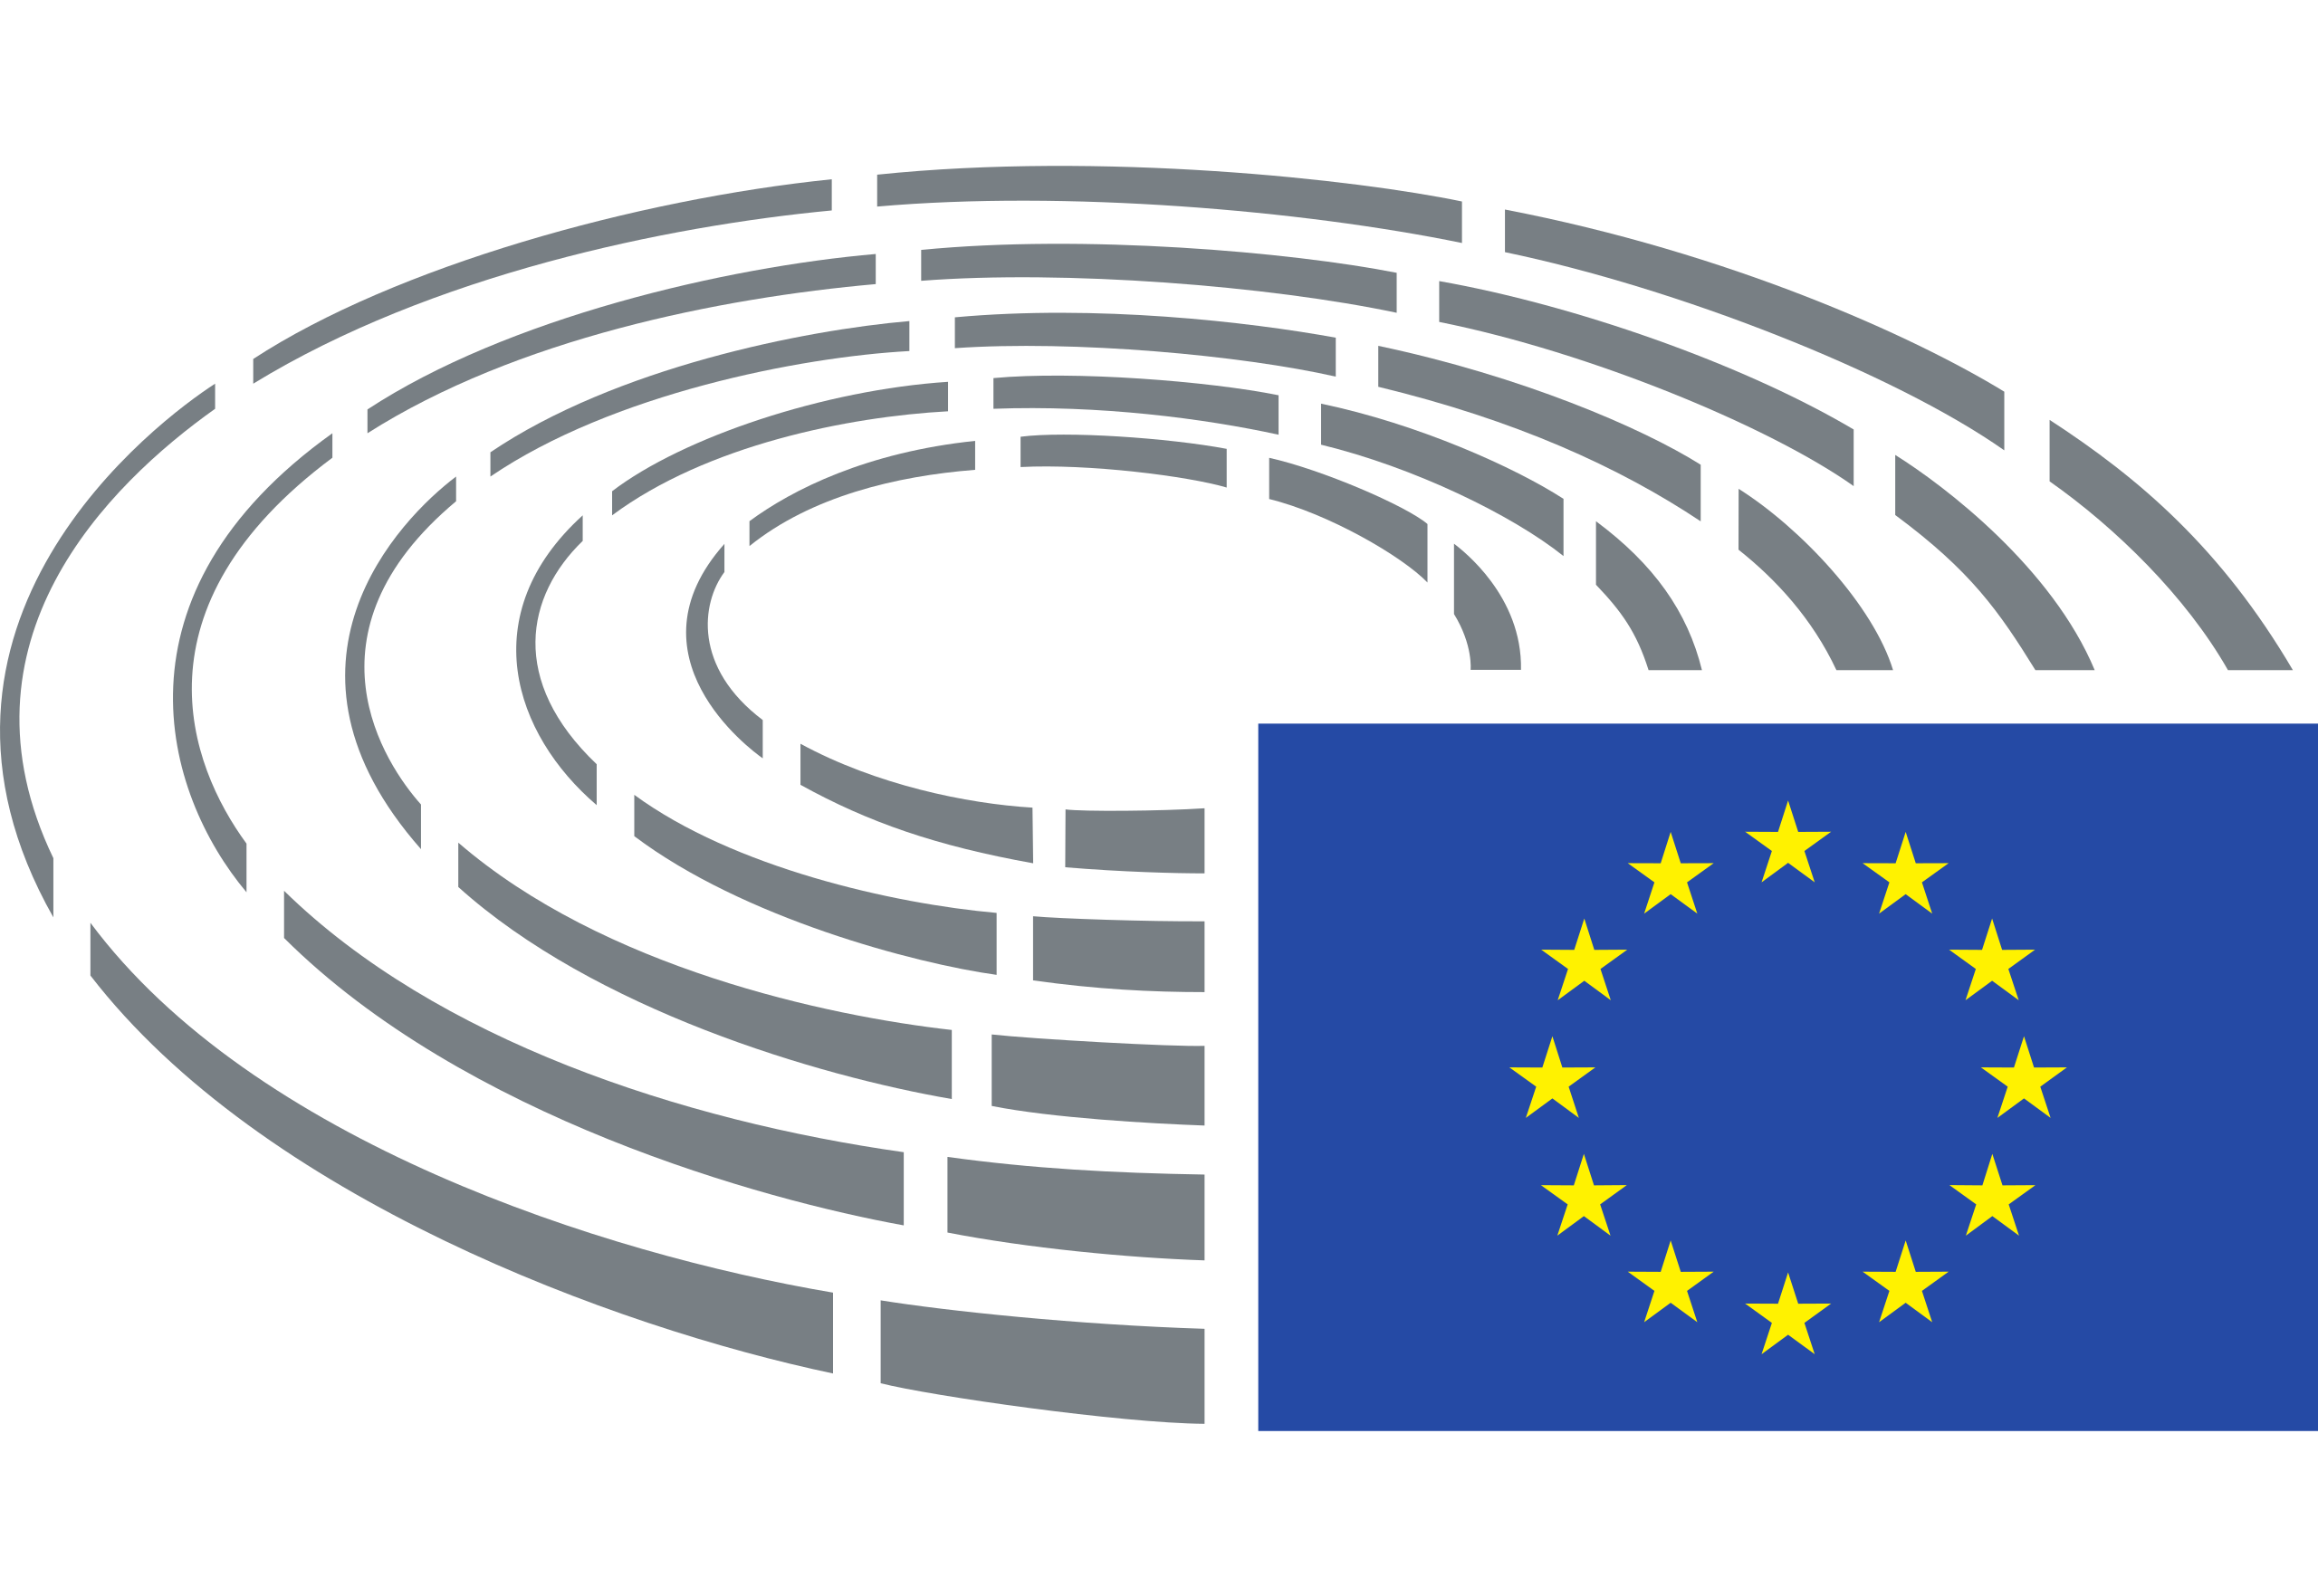 european parliament logo